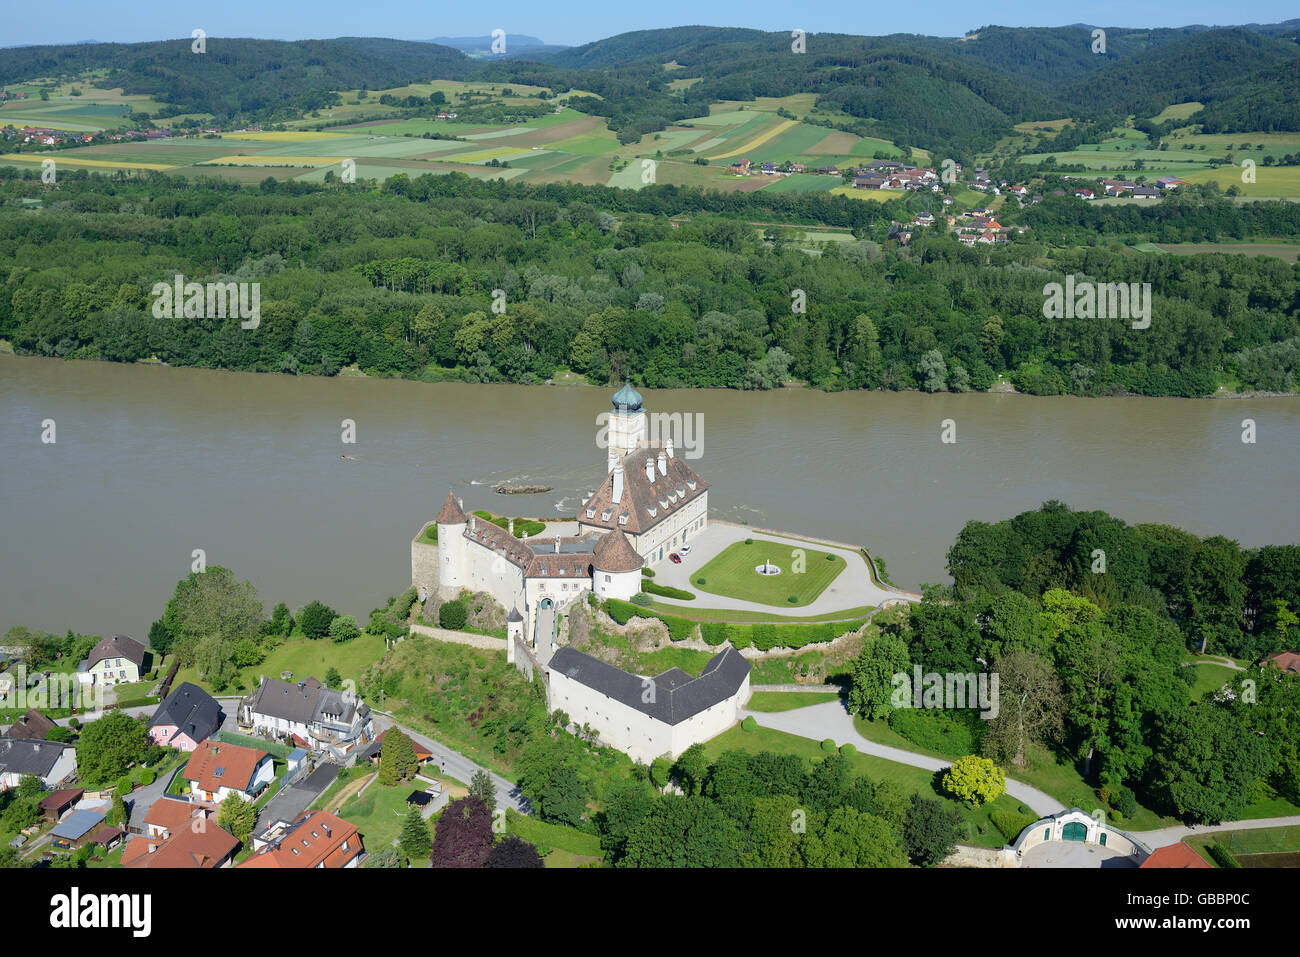 VUE AÉRIENNE.Château médiéval de Schönbühel situé sur un petit éperon rocheux sur la rive droite du Danube.Basse-Autriche, Autriche. Banque D'Images